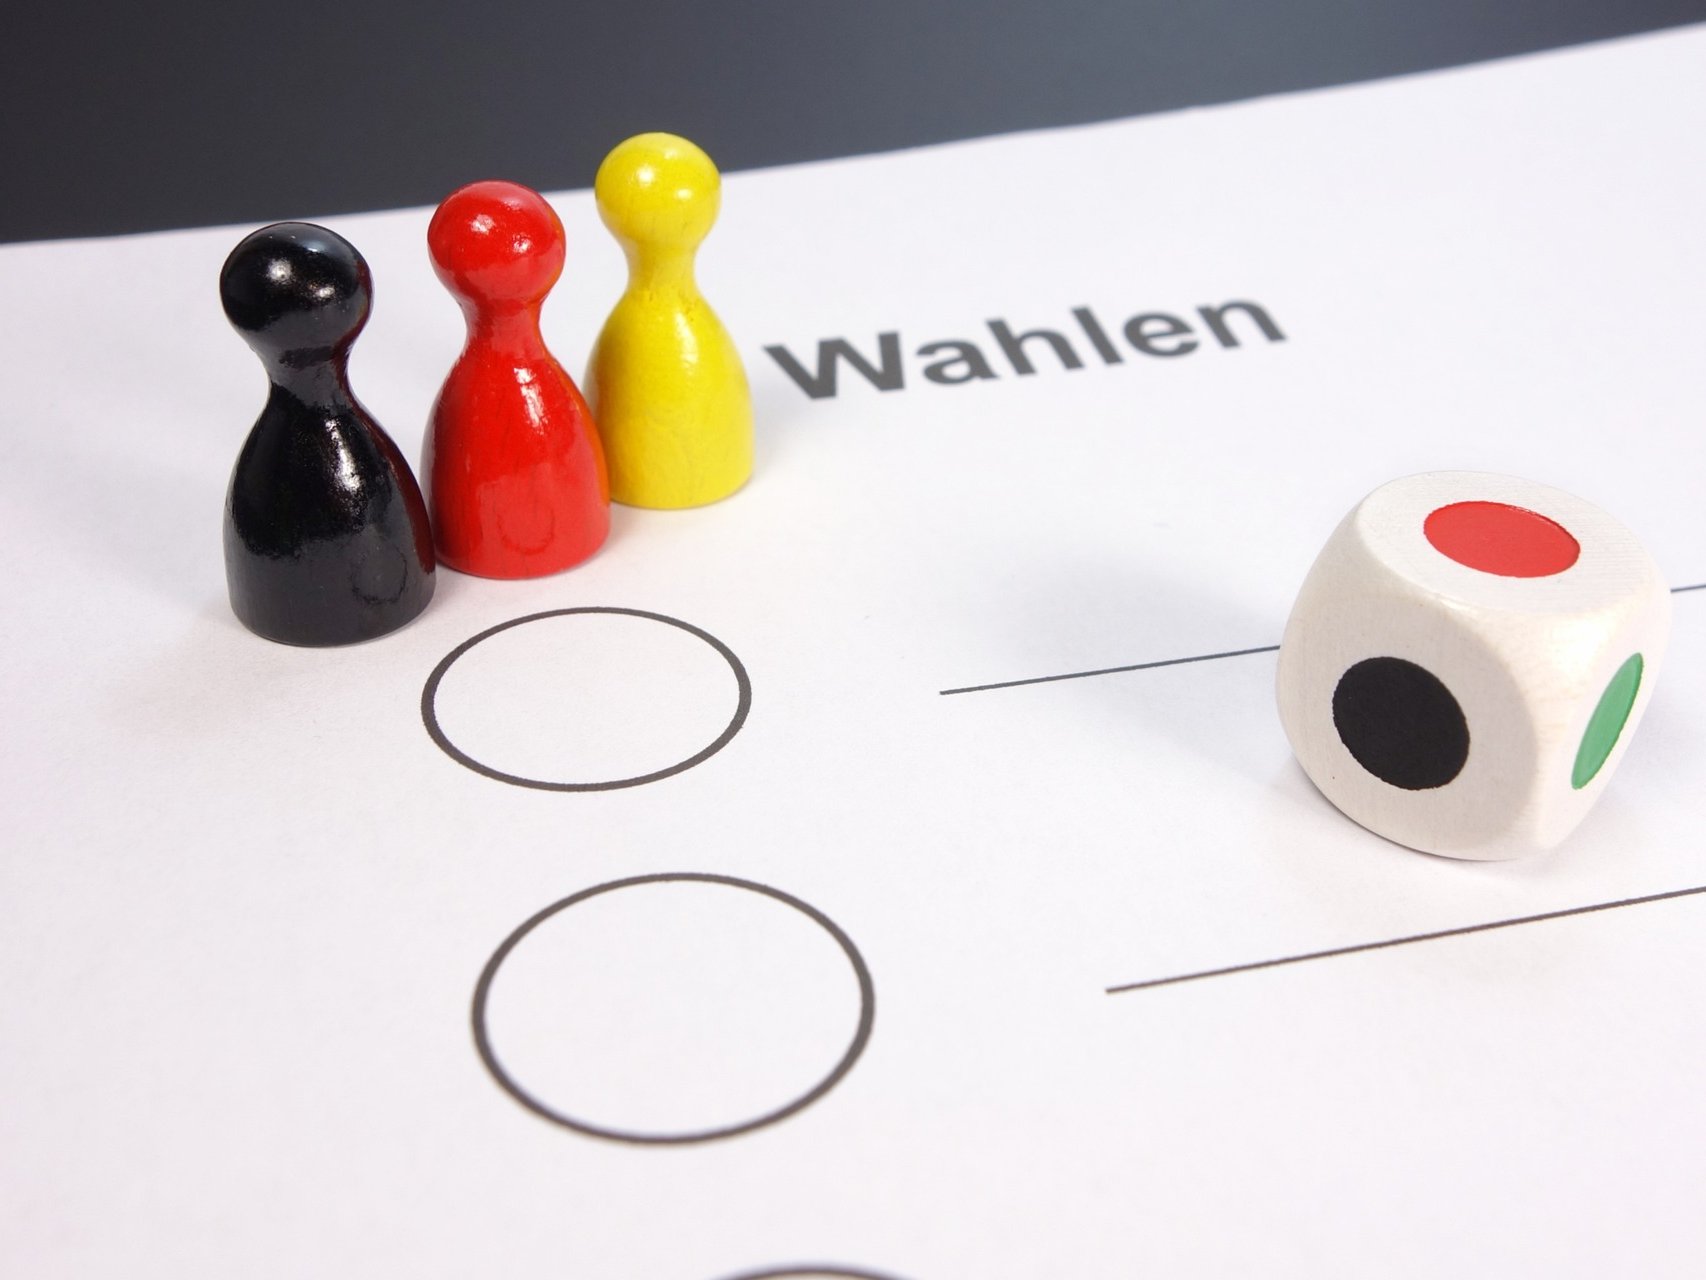 Schwarz rot gelbe Spielfiguren stehen auf einem Wahlzettel im Vordergrund ist ein Farbwürfel zu sehen.